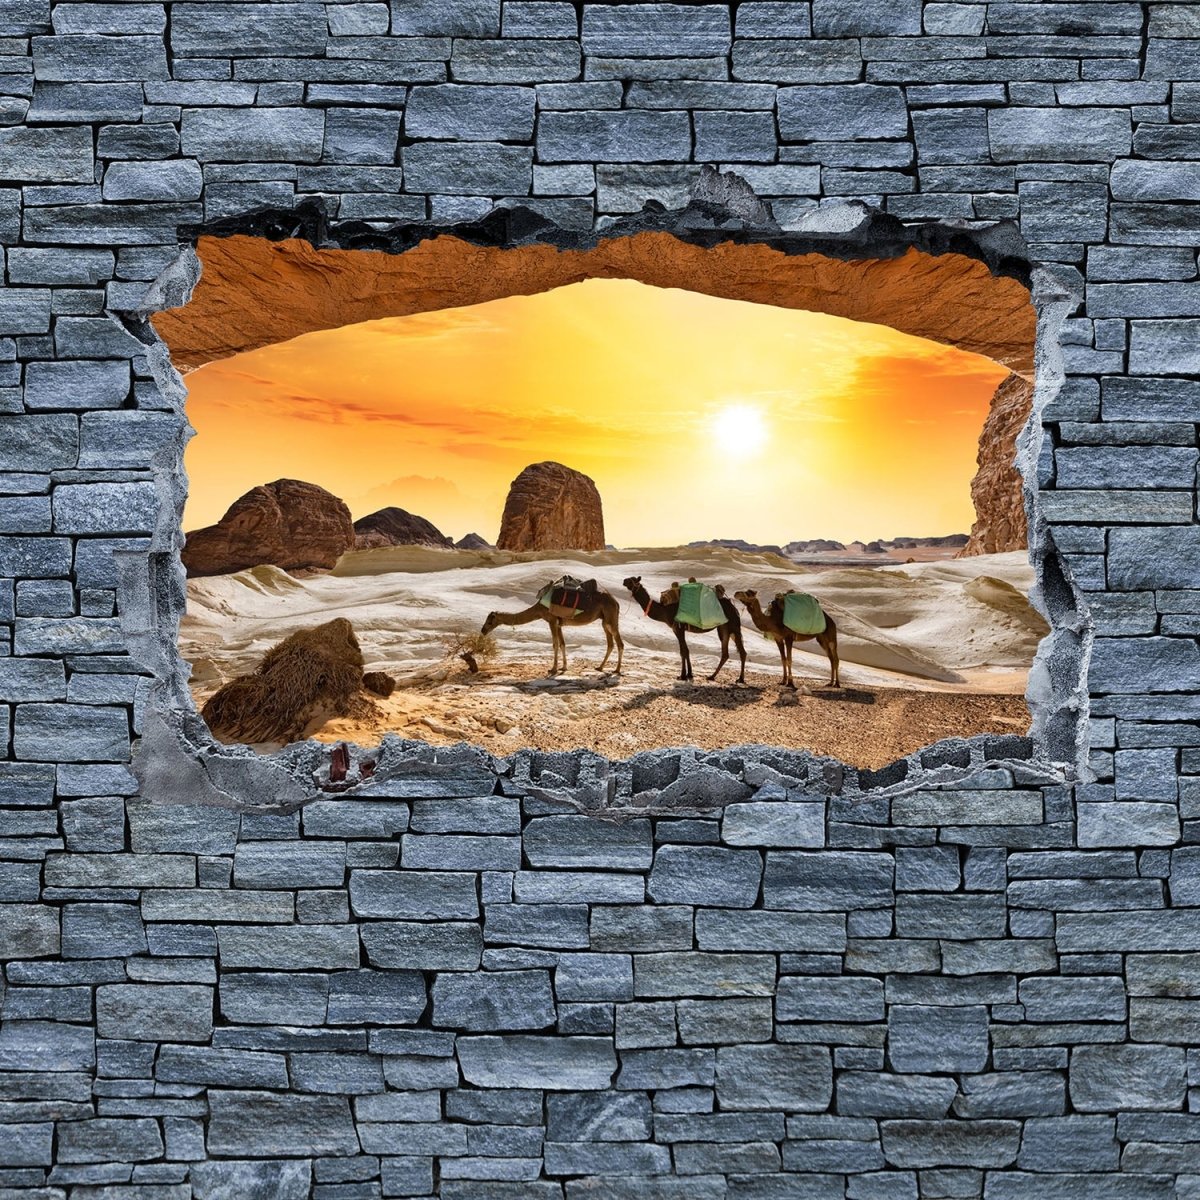 Beistelltisch 3D Kamele in der Wüste- grobe Steinmauer M0643 entdecken - Bild 2